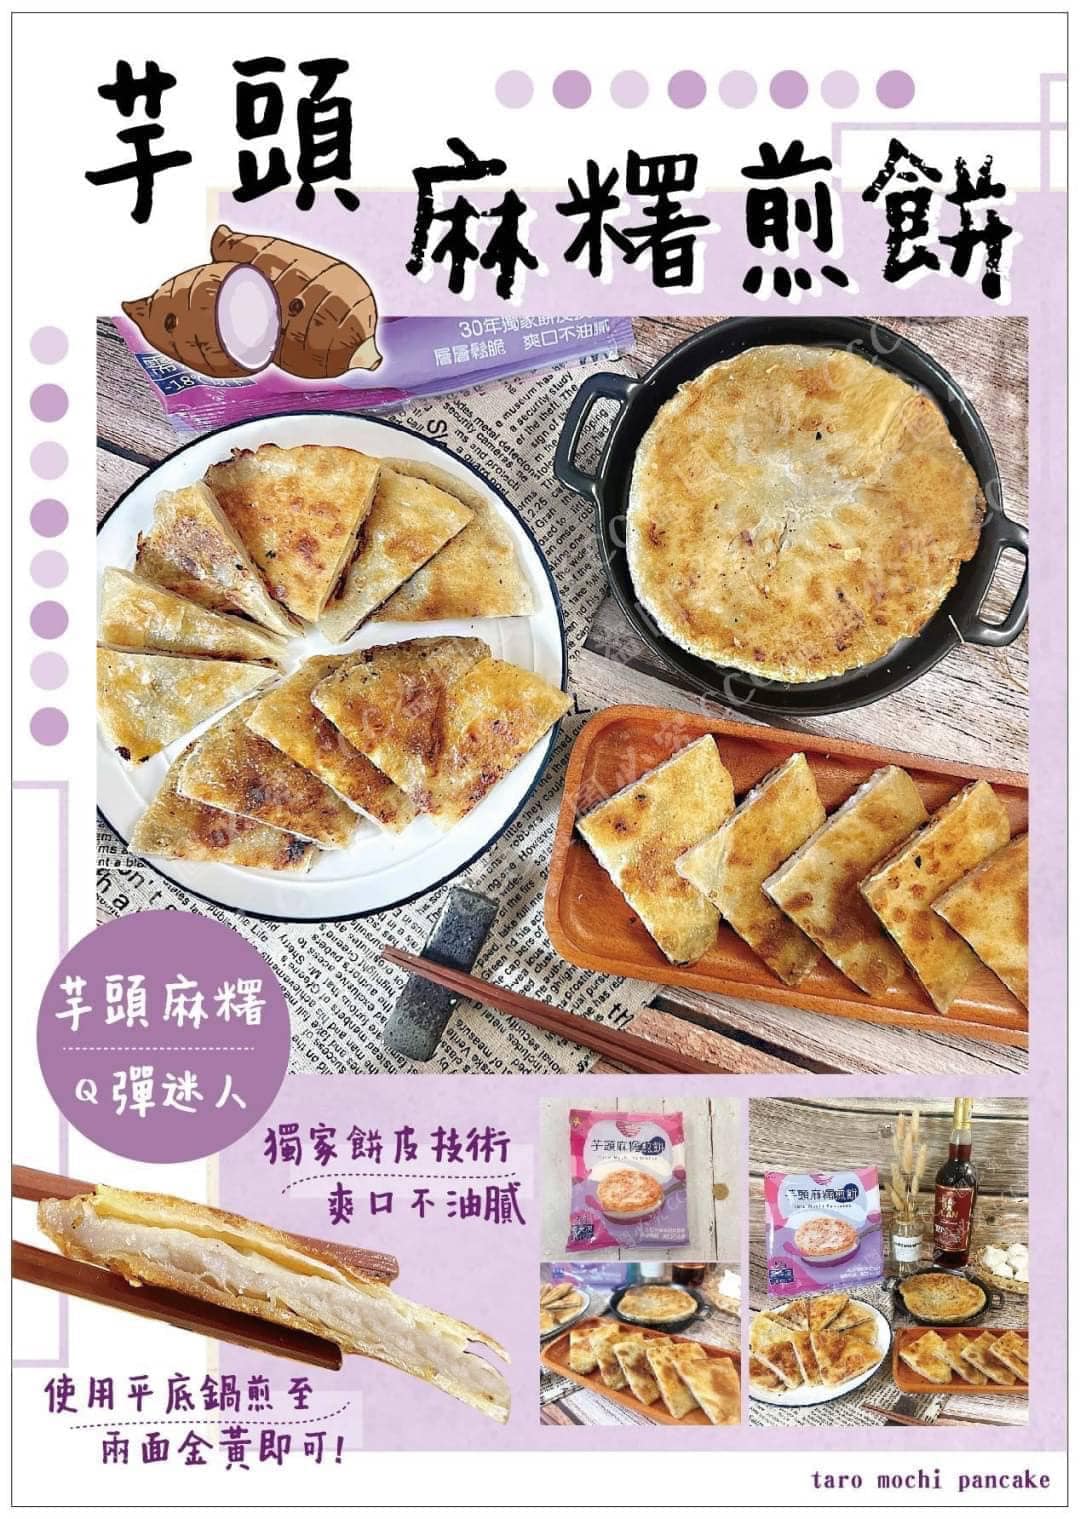 低溫配送_產品名稱:芋頭麻糬煎餅5入500g(包)